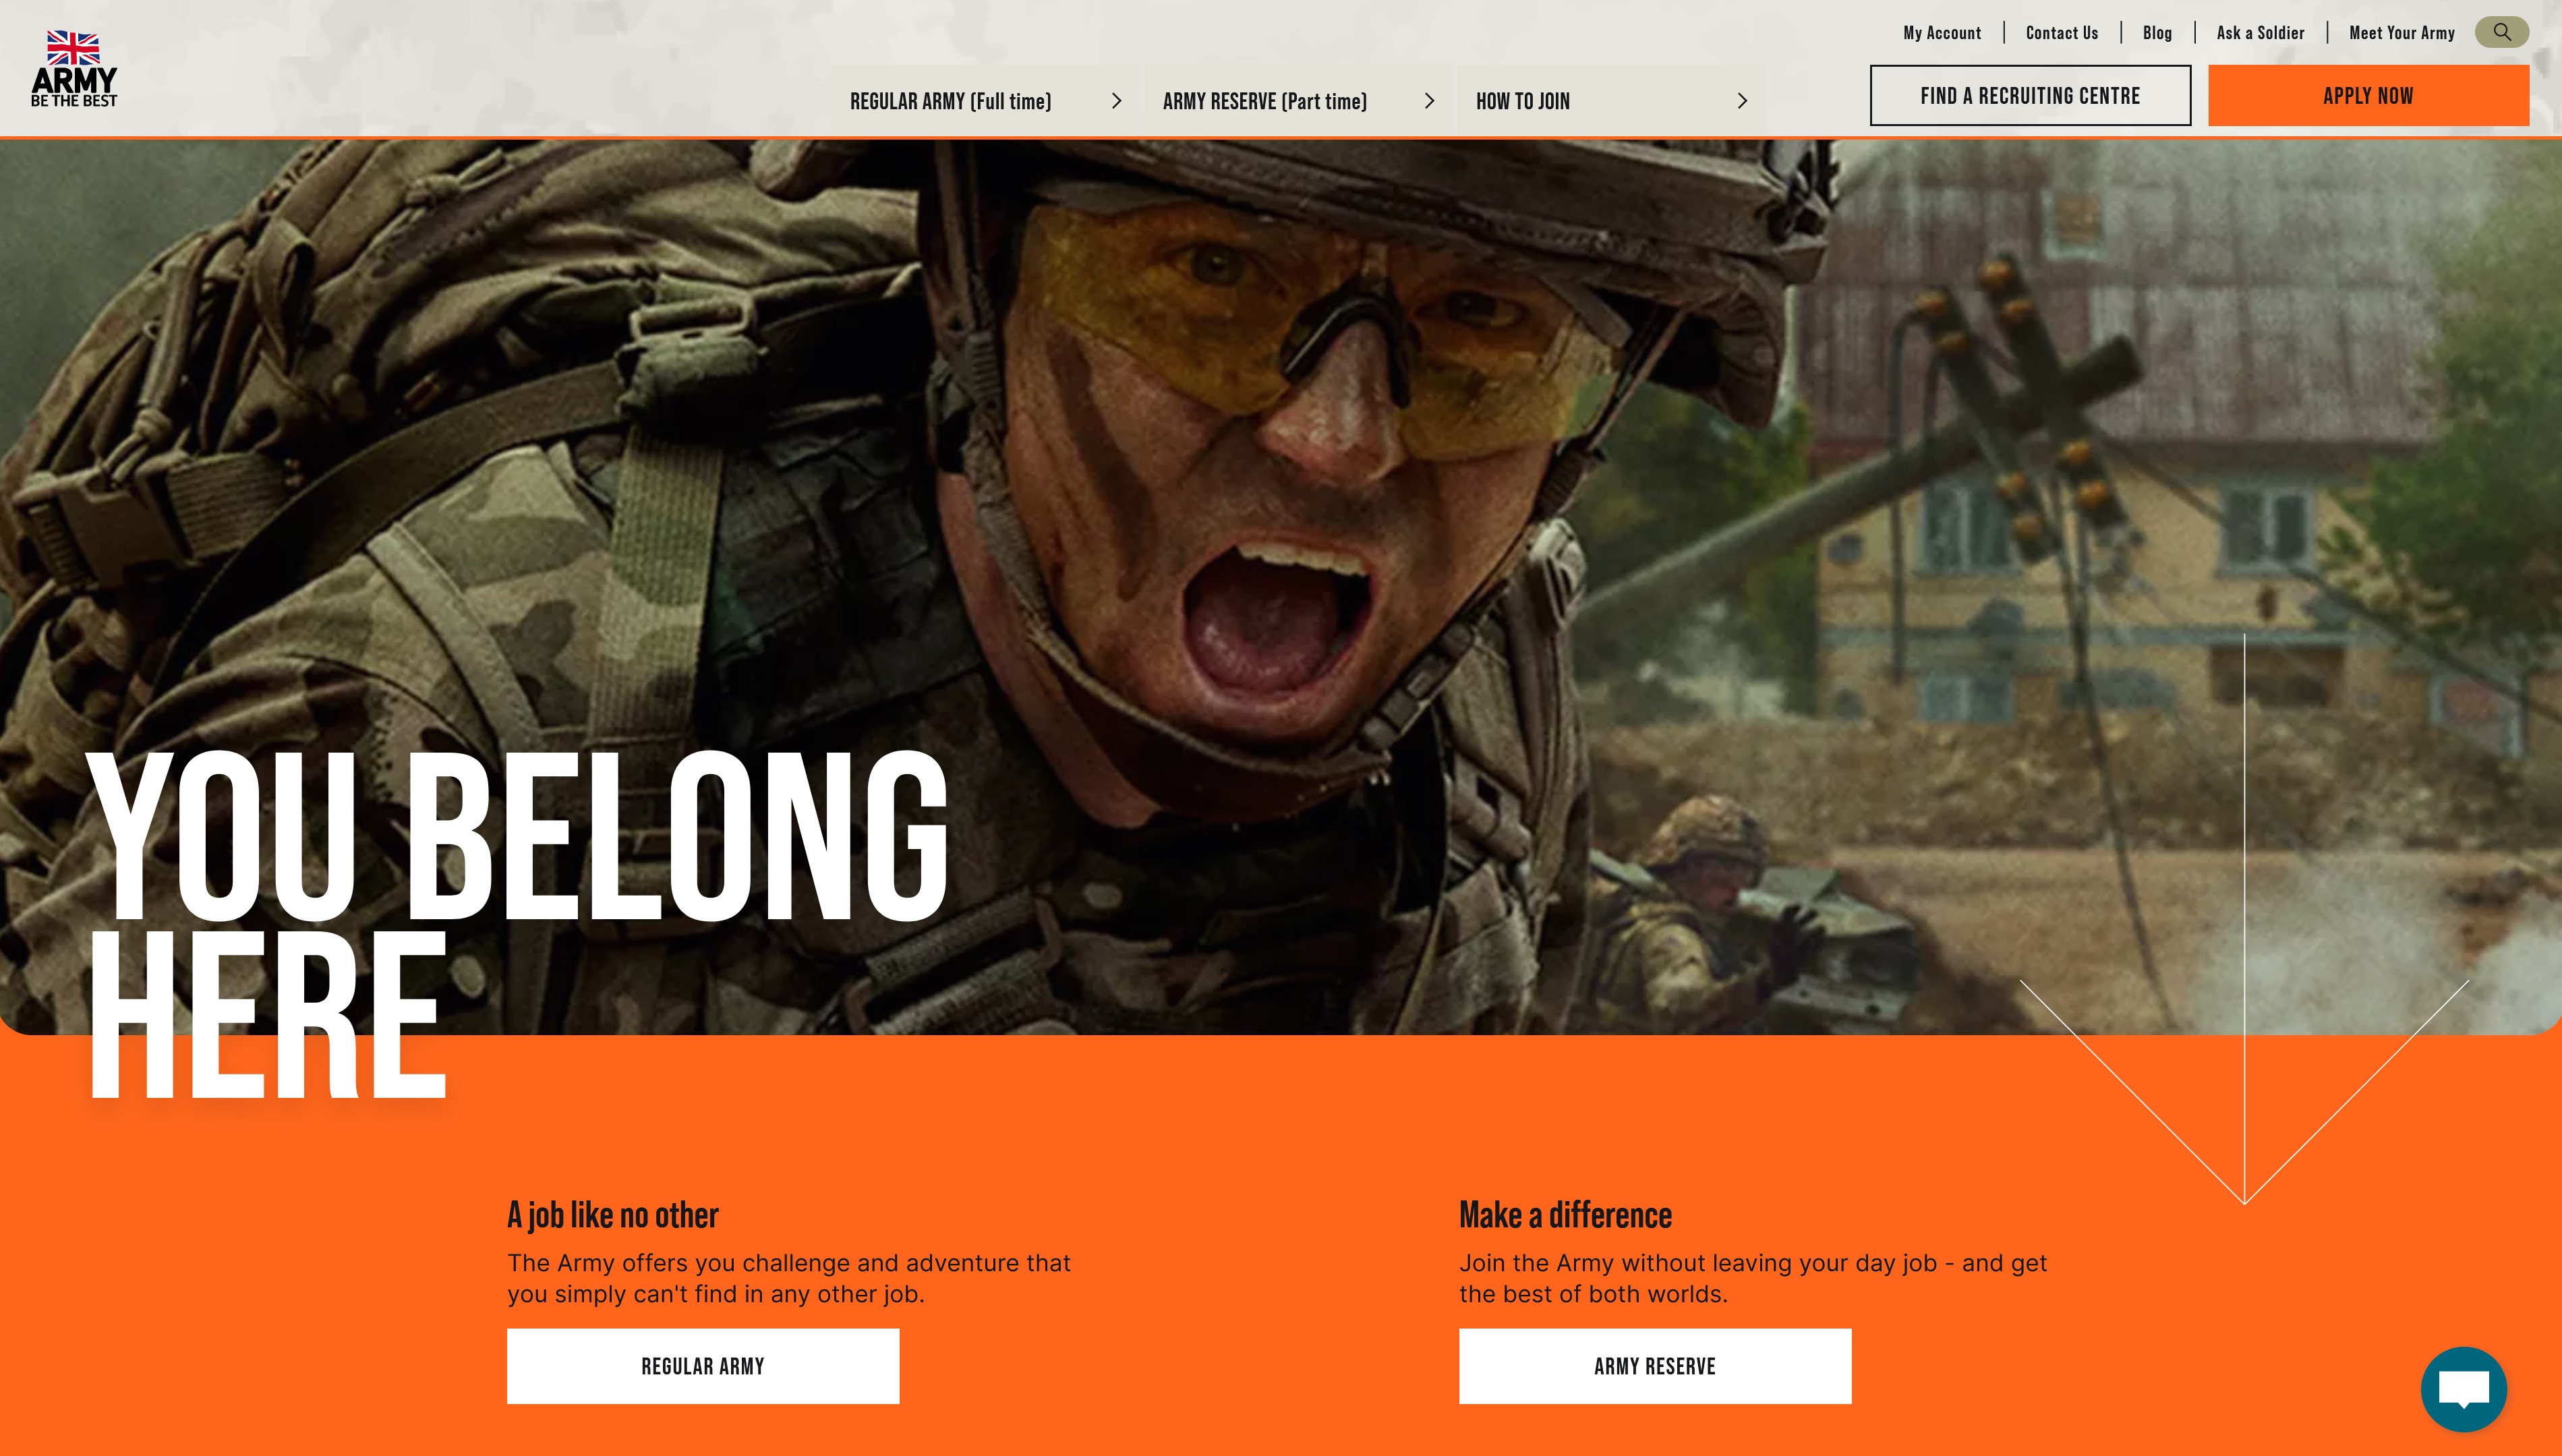 Kopfzeile der Website „Jobs and Recruitment“ der britischen Armee – Bild eines Soldaten und die Worte 